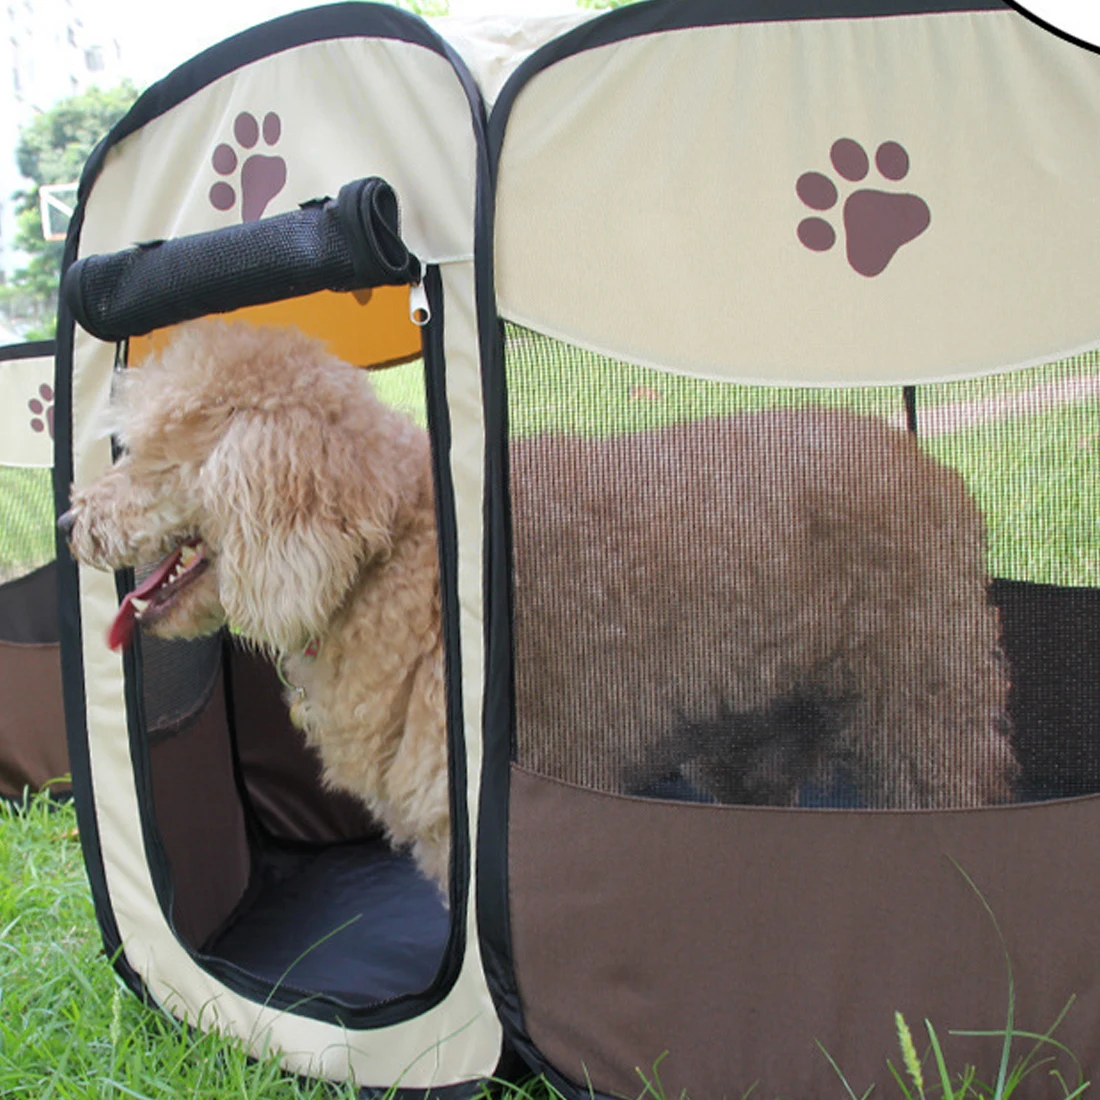 Манеж щенок питомник восьмиугольный забор простой в эксплуатации на открытом воздухе принадлежности портативный складной для питомца палатка для собаки домик клетка для собаки кошка палатка